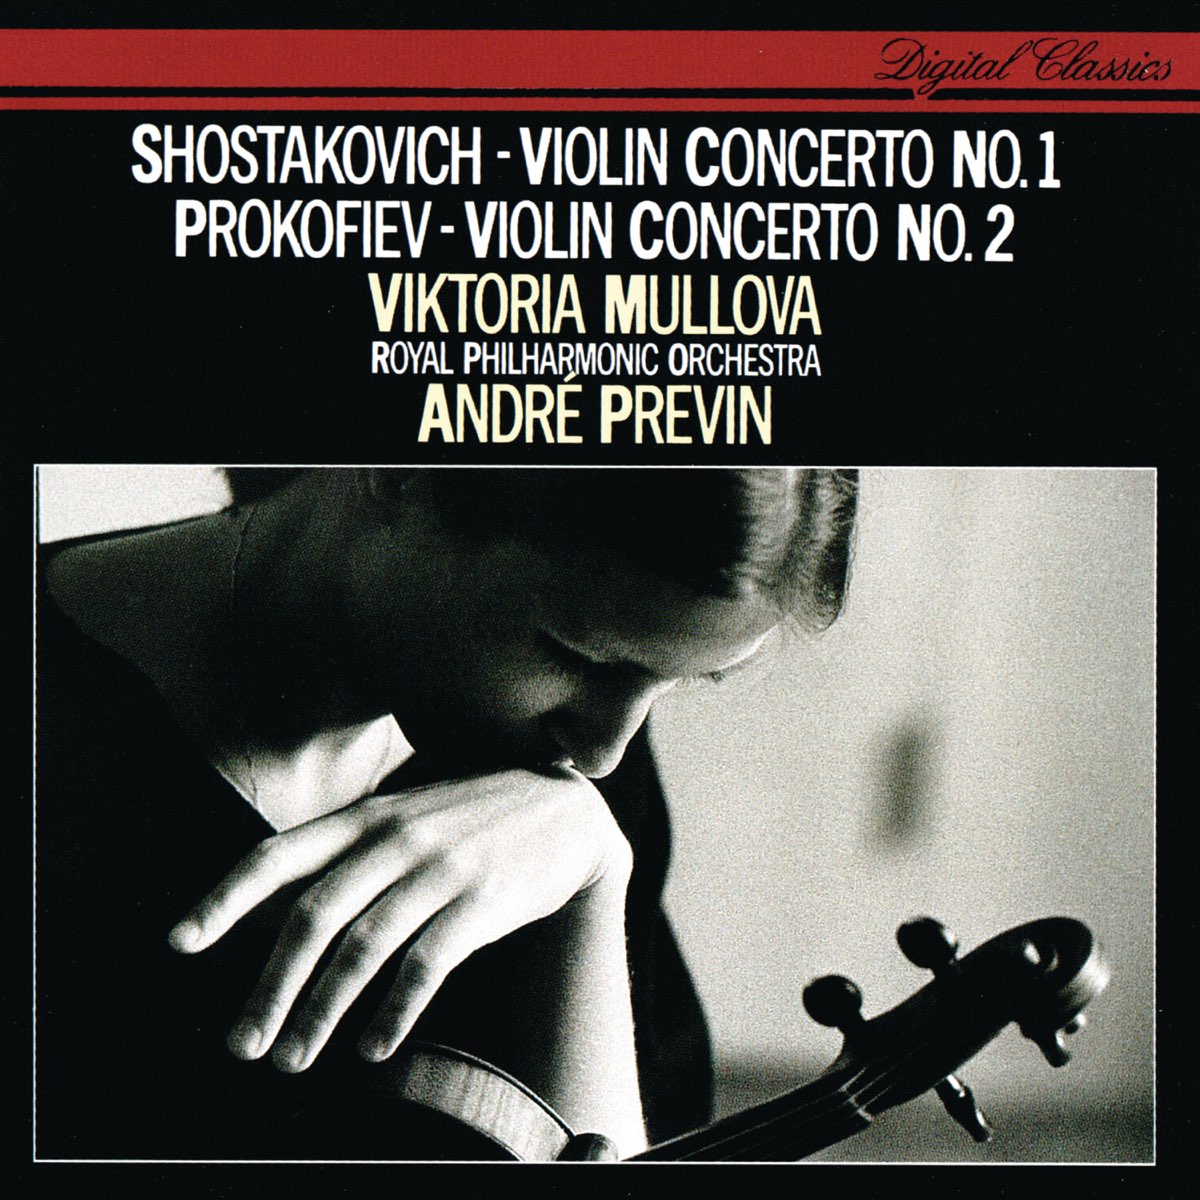 Violin concerto no 2. Naxos Shostakovich Violin Concerto. Shostakovich Piano Concerto no. 2. Shostakovich Piano Concerto no. 2 2000.